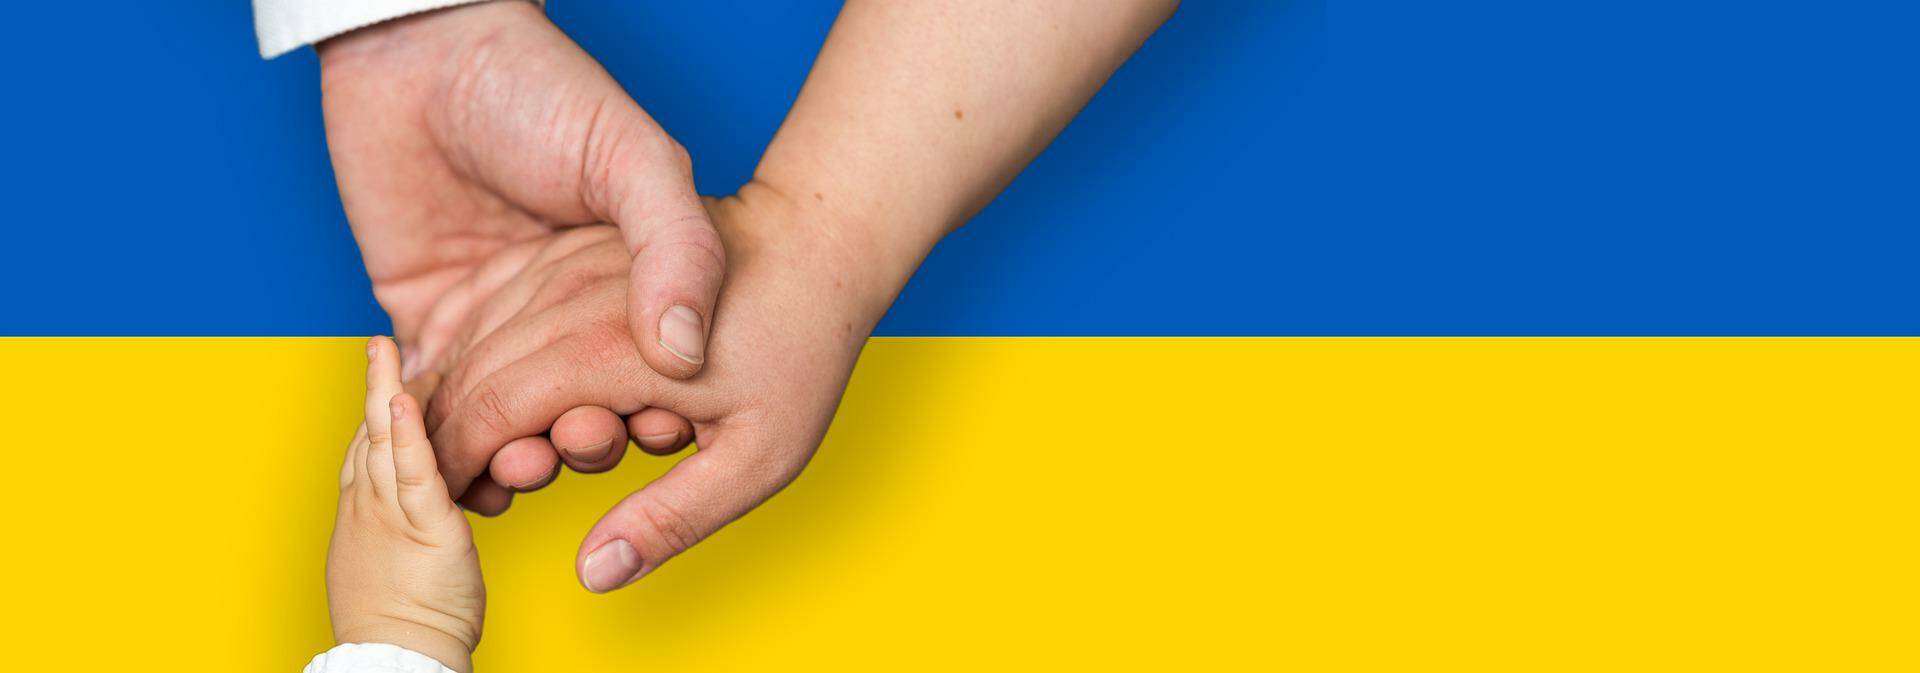 Alba, possibilità di richiedere sostentamento per le persone in fuga dall’Ucraina